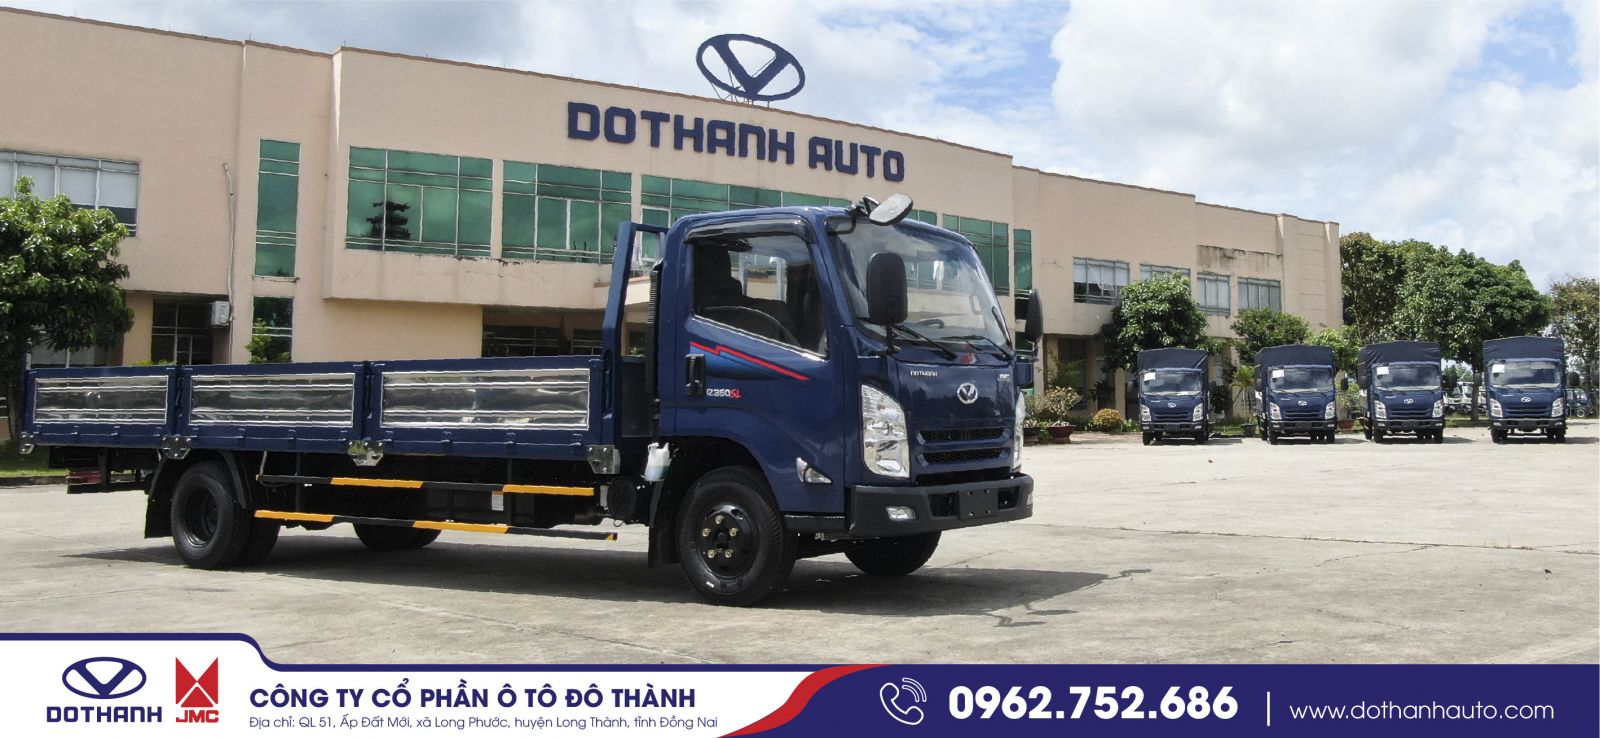 DoThanh Auto là đối tác chiến lược của JMC tại thị trường Việt Nam